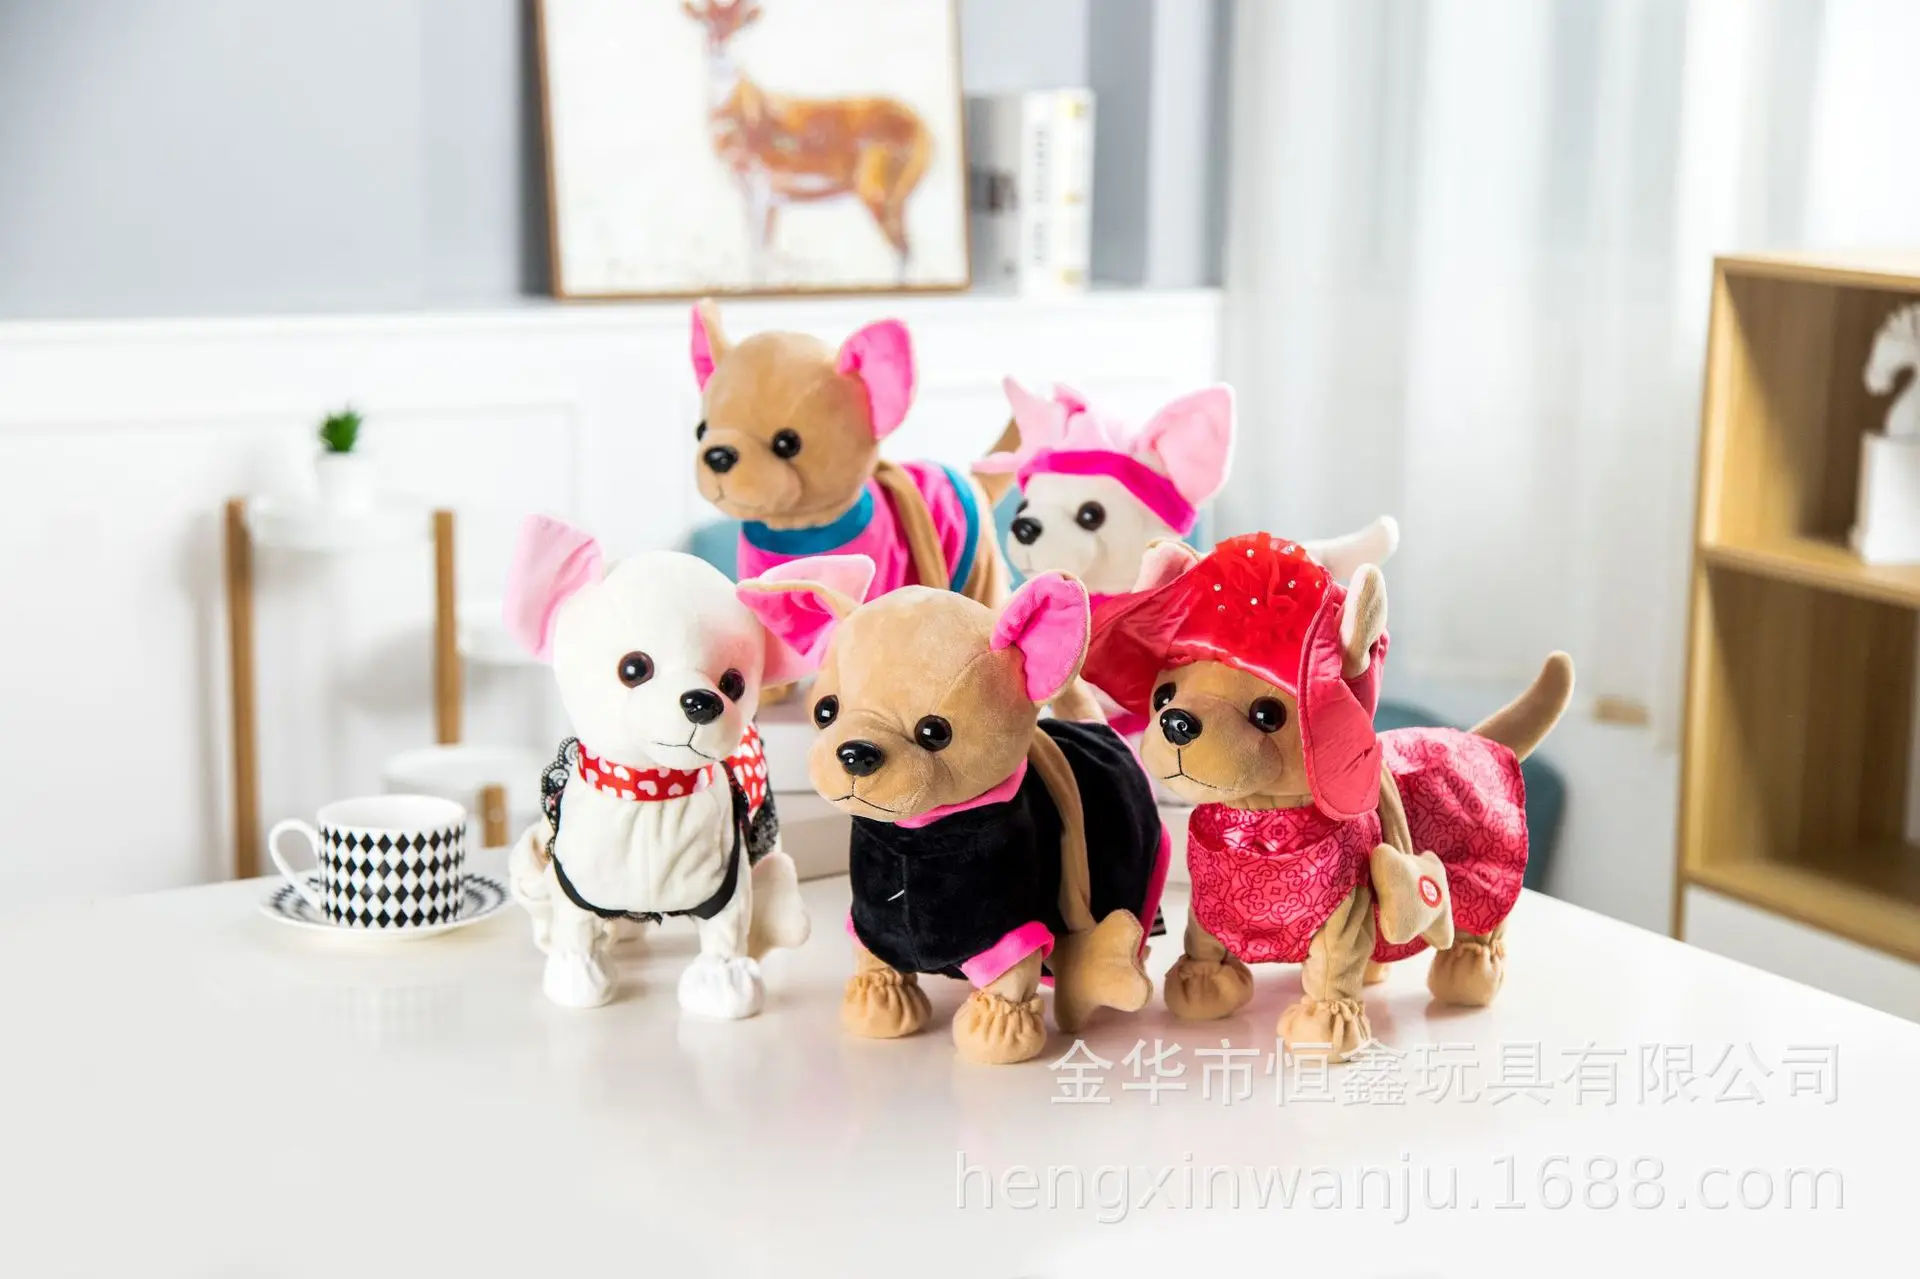 Новые Электронные Домашние животные робот собака дер Чи любовь молния поет и ходит с мешком интерактивная игрушка для детей подарки на день рождения